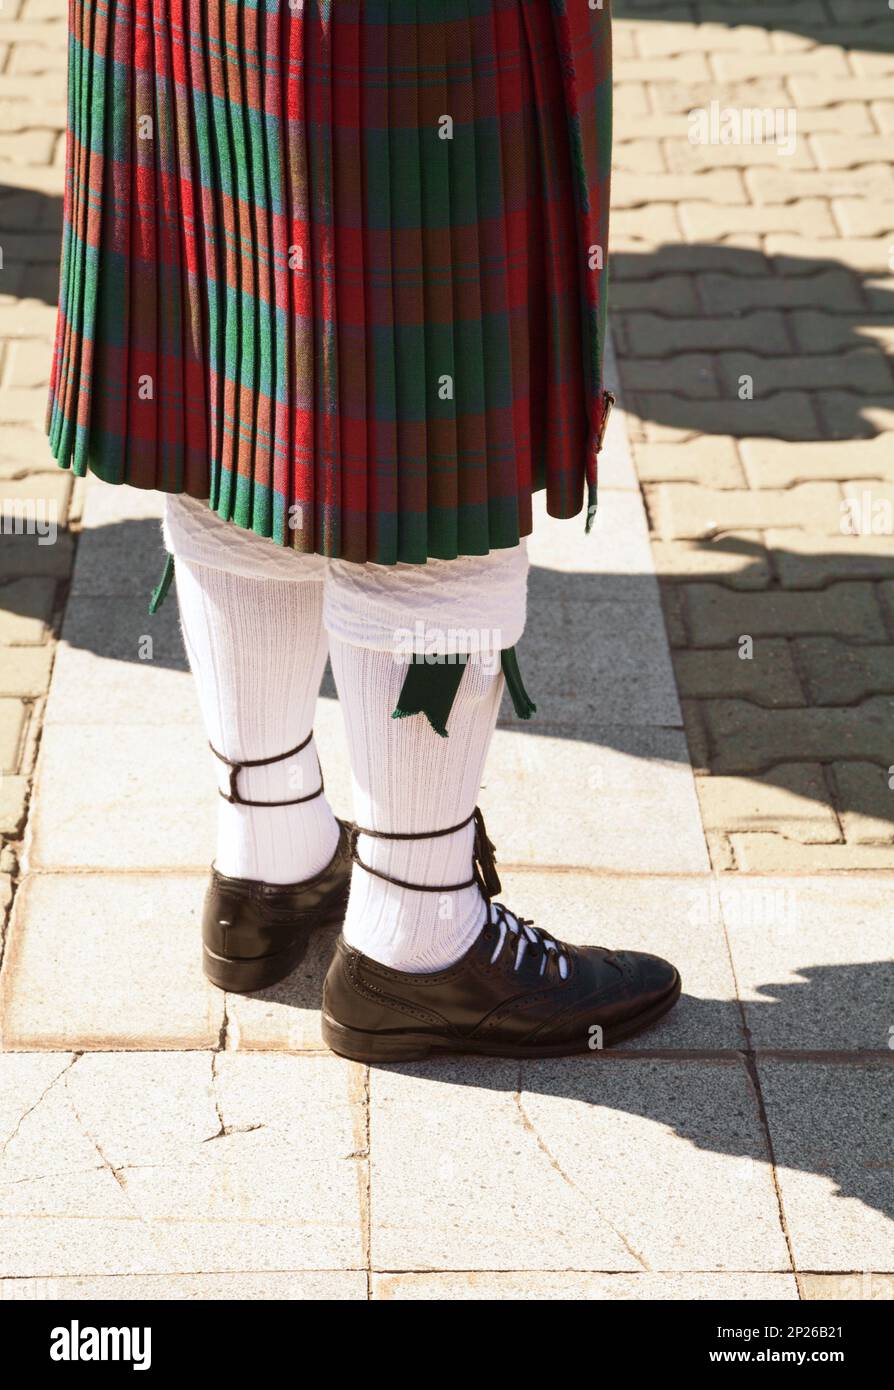 Le rouge et le vert écossais tartan kilt. Highlander portant des vêtements traditionnels de l'Écosse. Cornemuse uniforme - jupe et chaussettes Banque D'Images